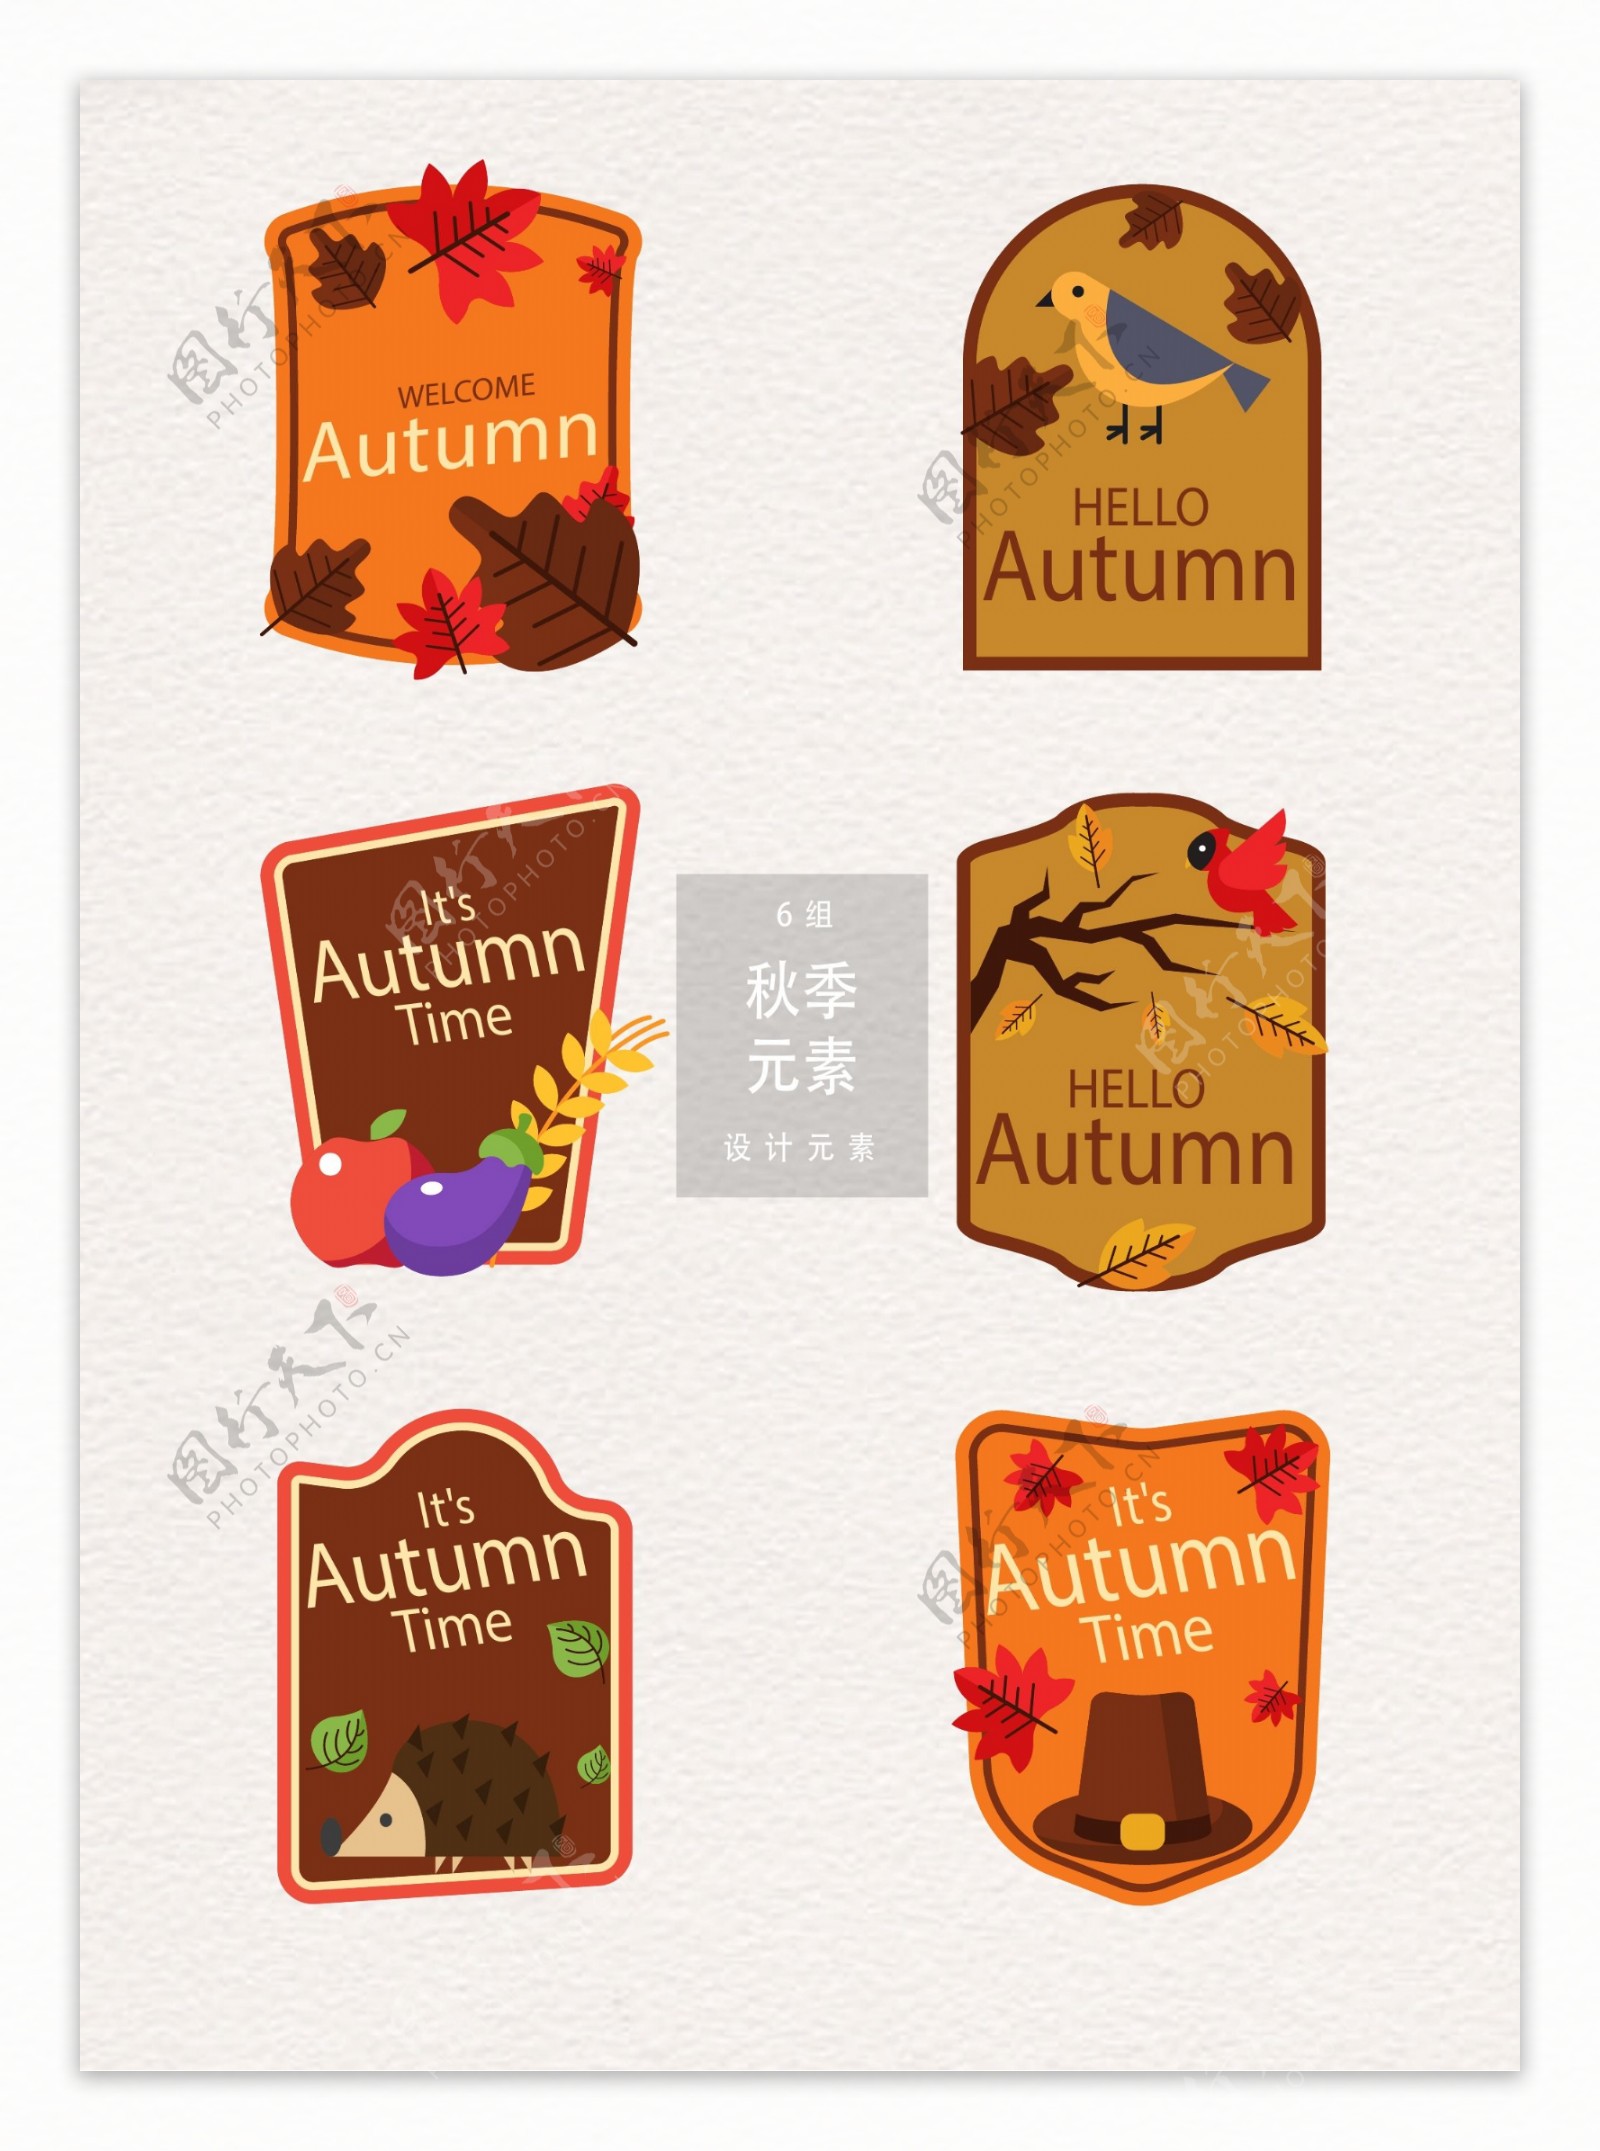 秋季秋天标签设计矢量素材